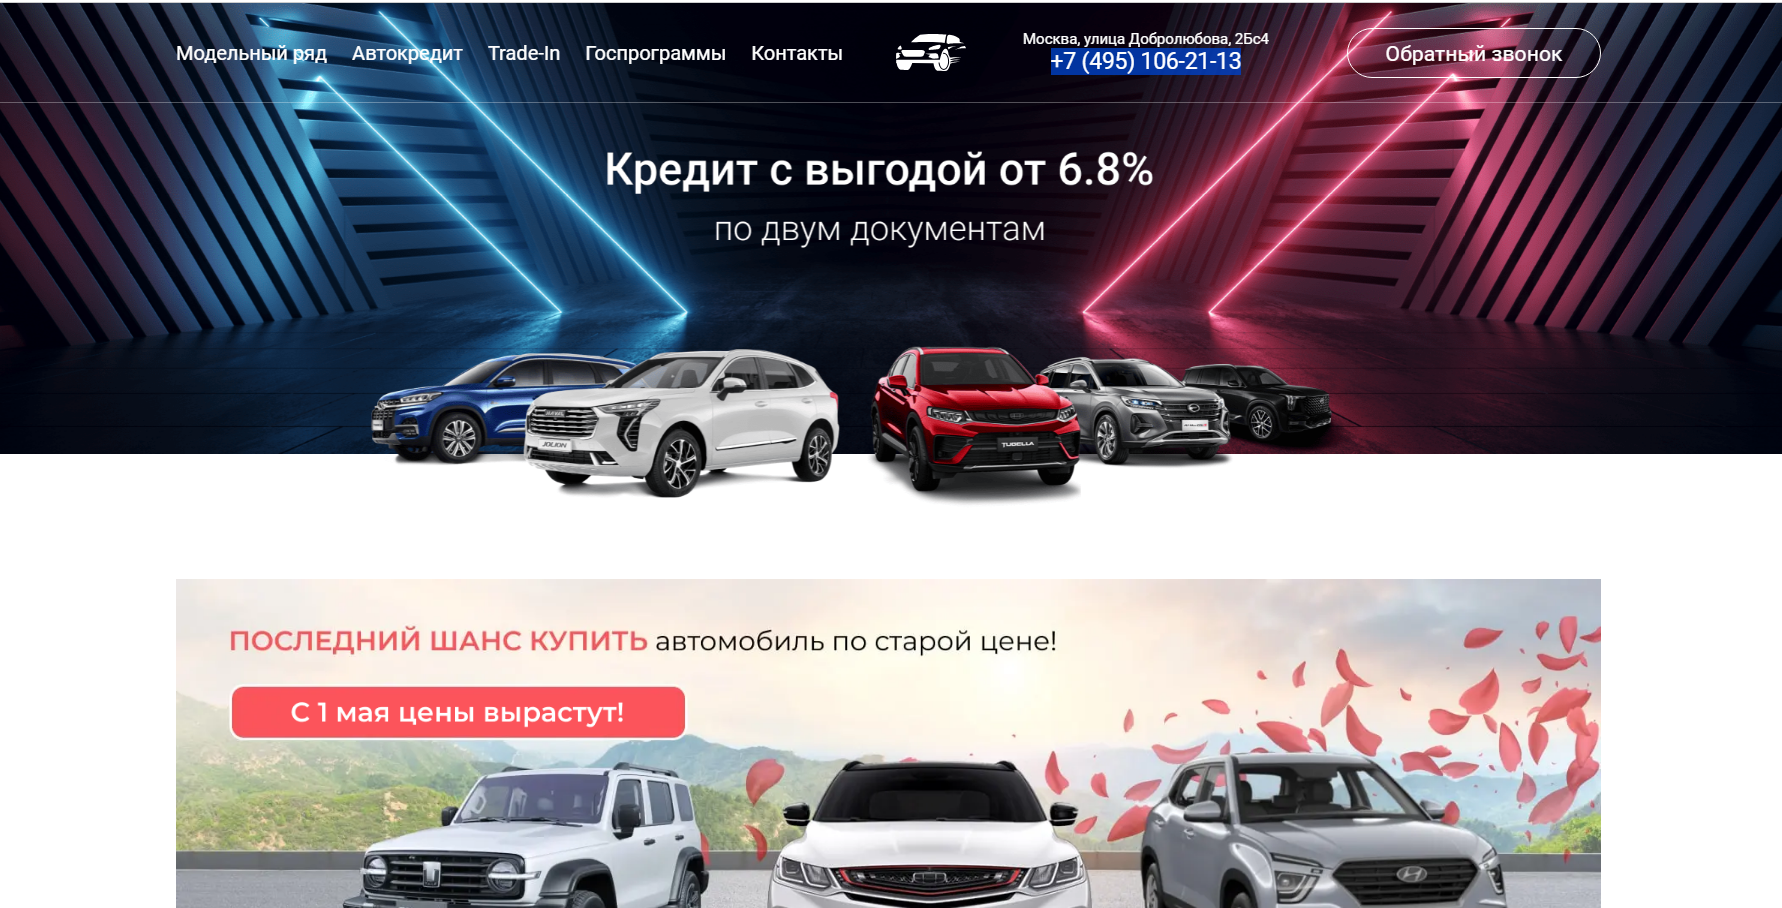 Автосалон Autosmsk отзывы покупателей